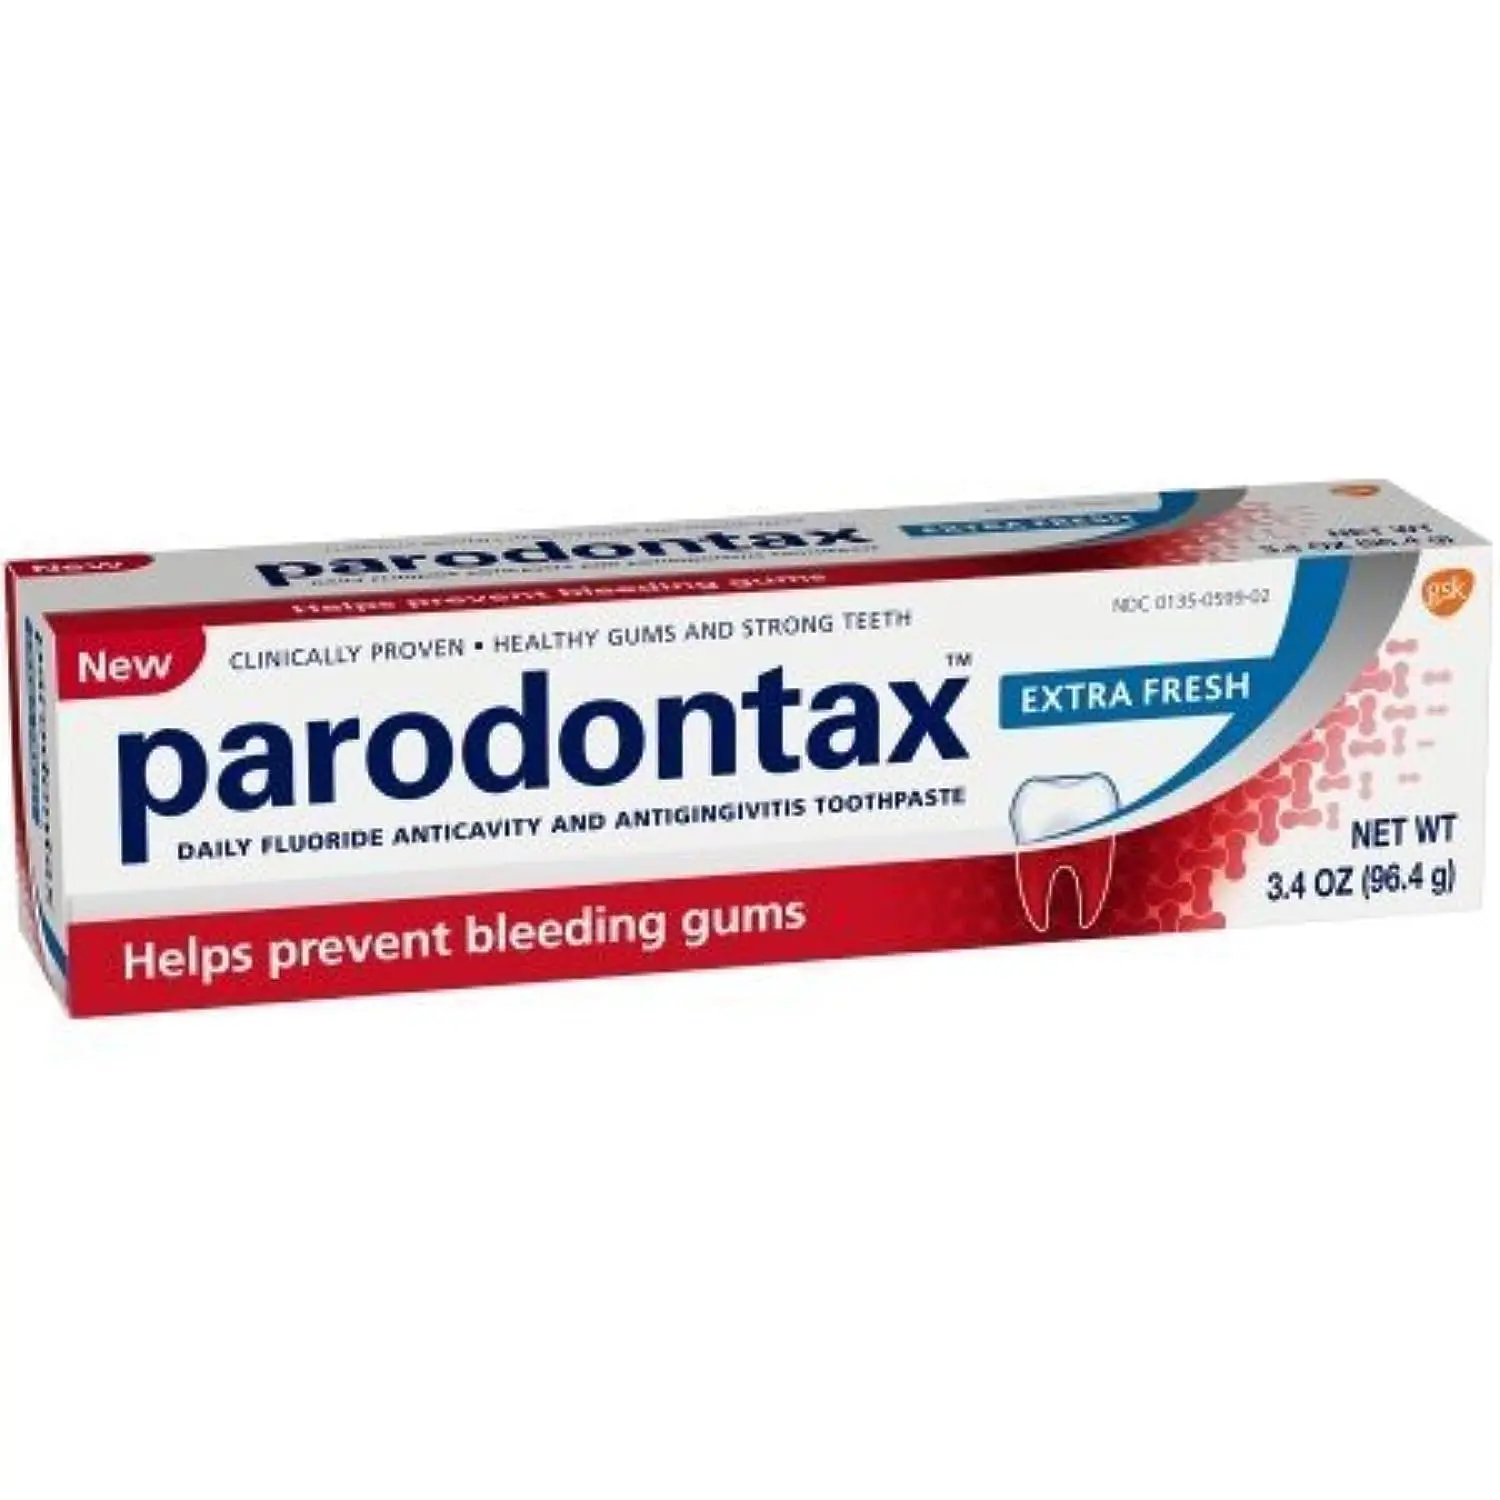 pasta de dientes parodontax precio - Cuánto cuesta parodontax pasta dental